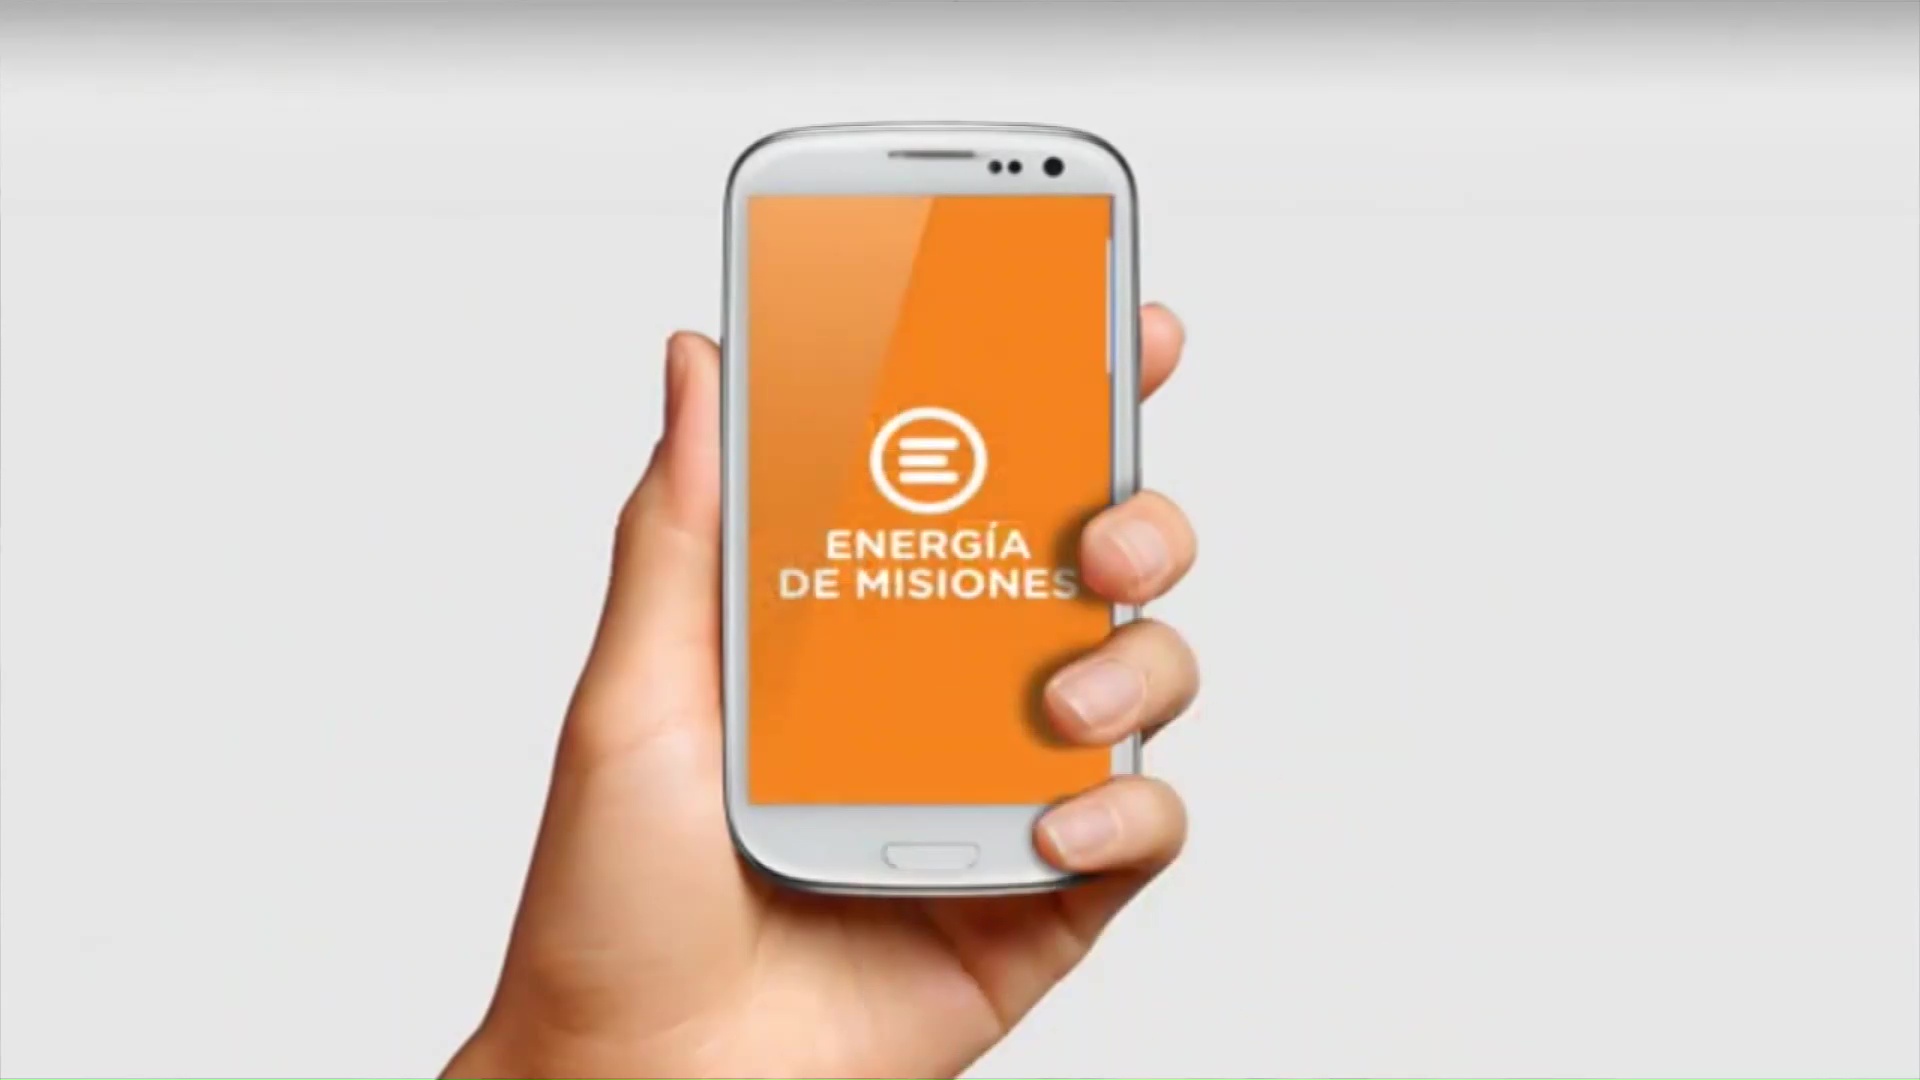 Beneficios para usuarios: Energía de Misiones sorteó electrodomésticos entre los usuarios de la app